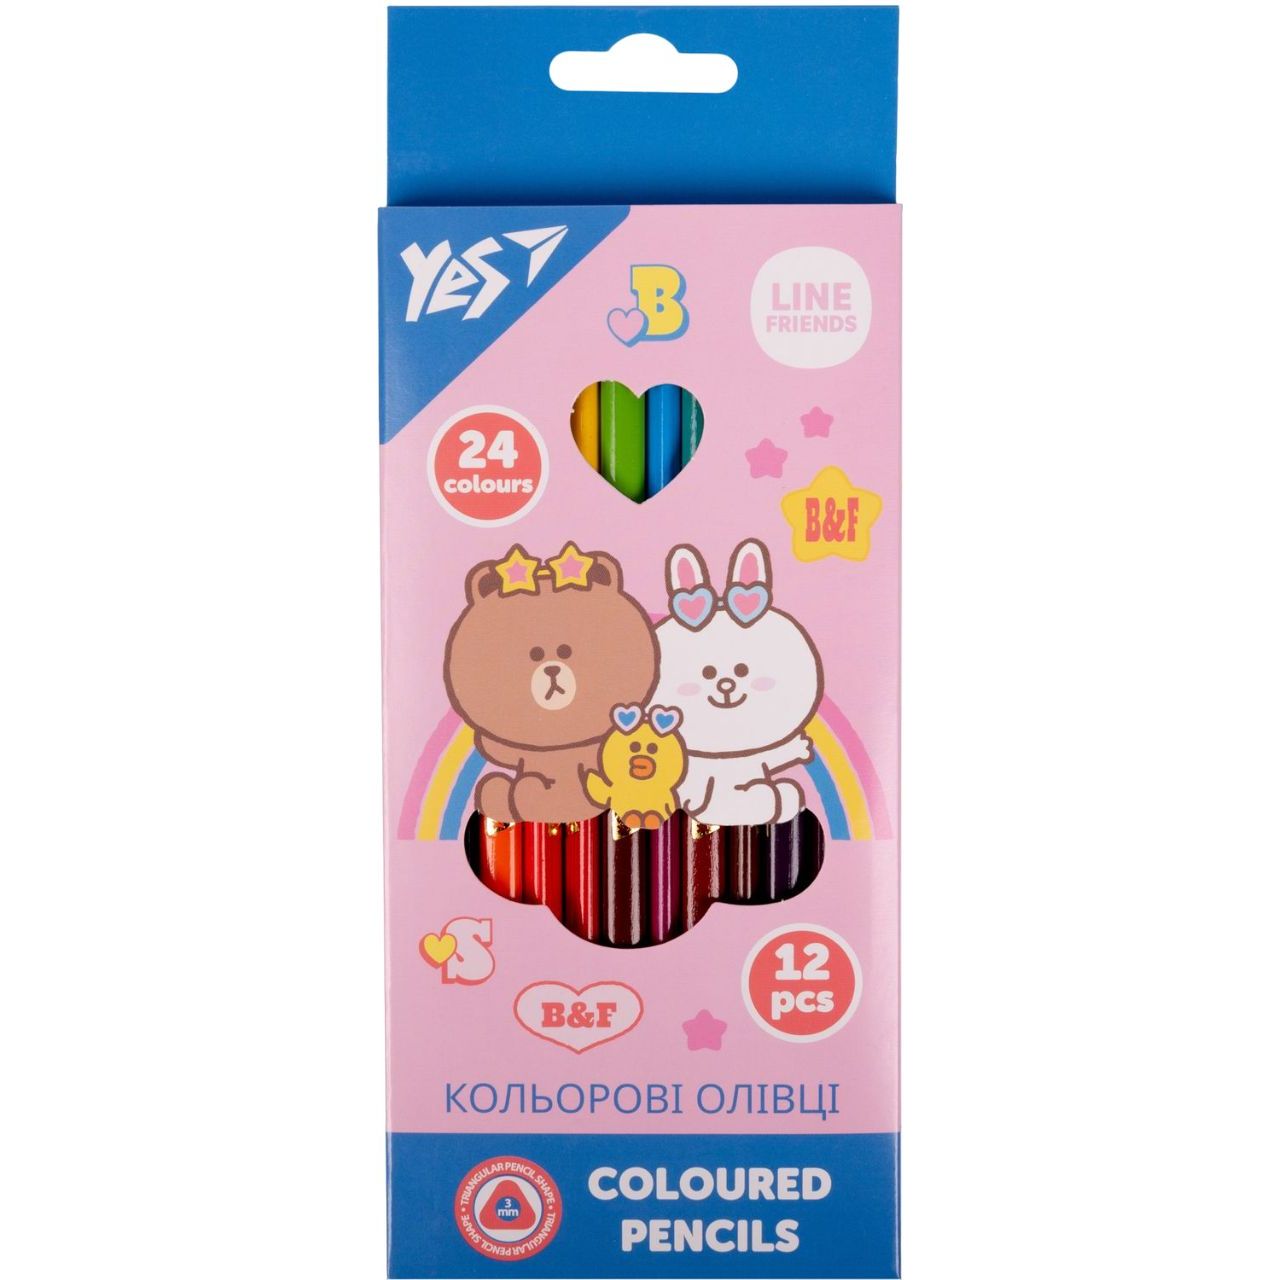 Олівці кольорові Yes Line Friends, двосторонні, 12 шт., 24 кольори (290713) - фото 1